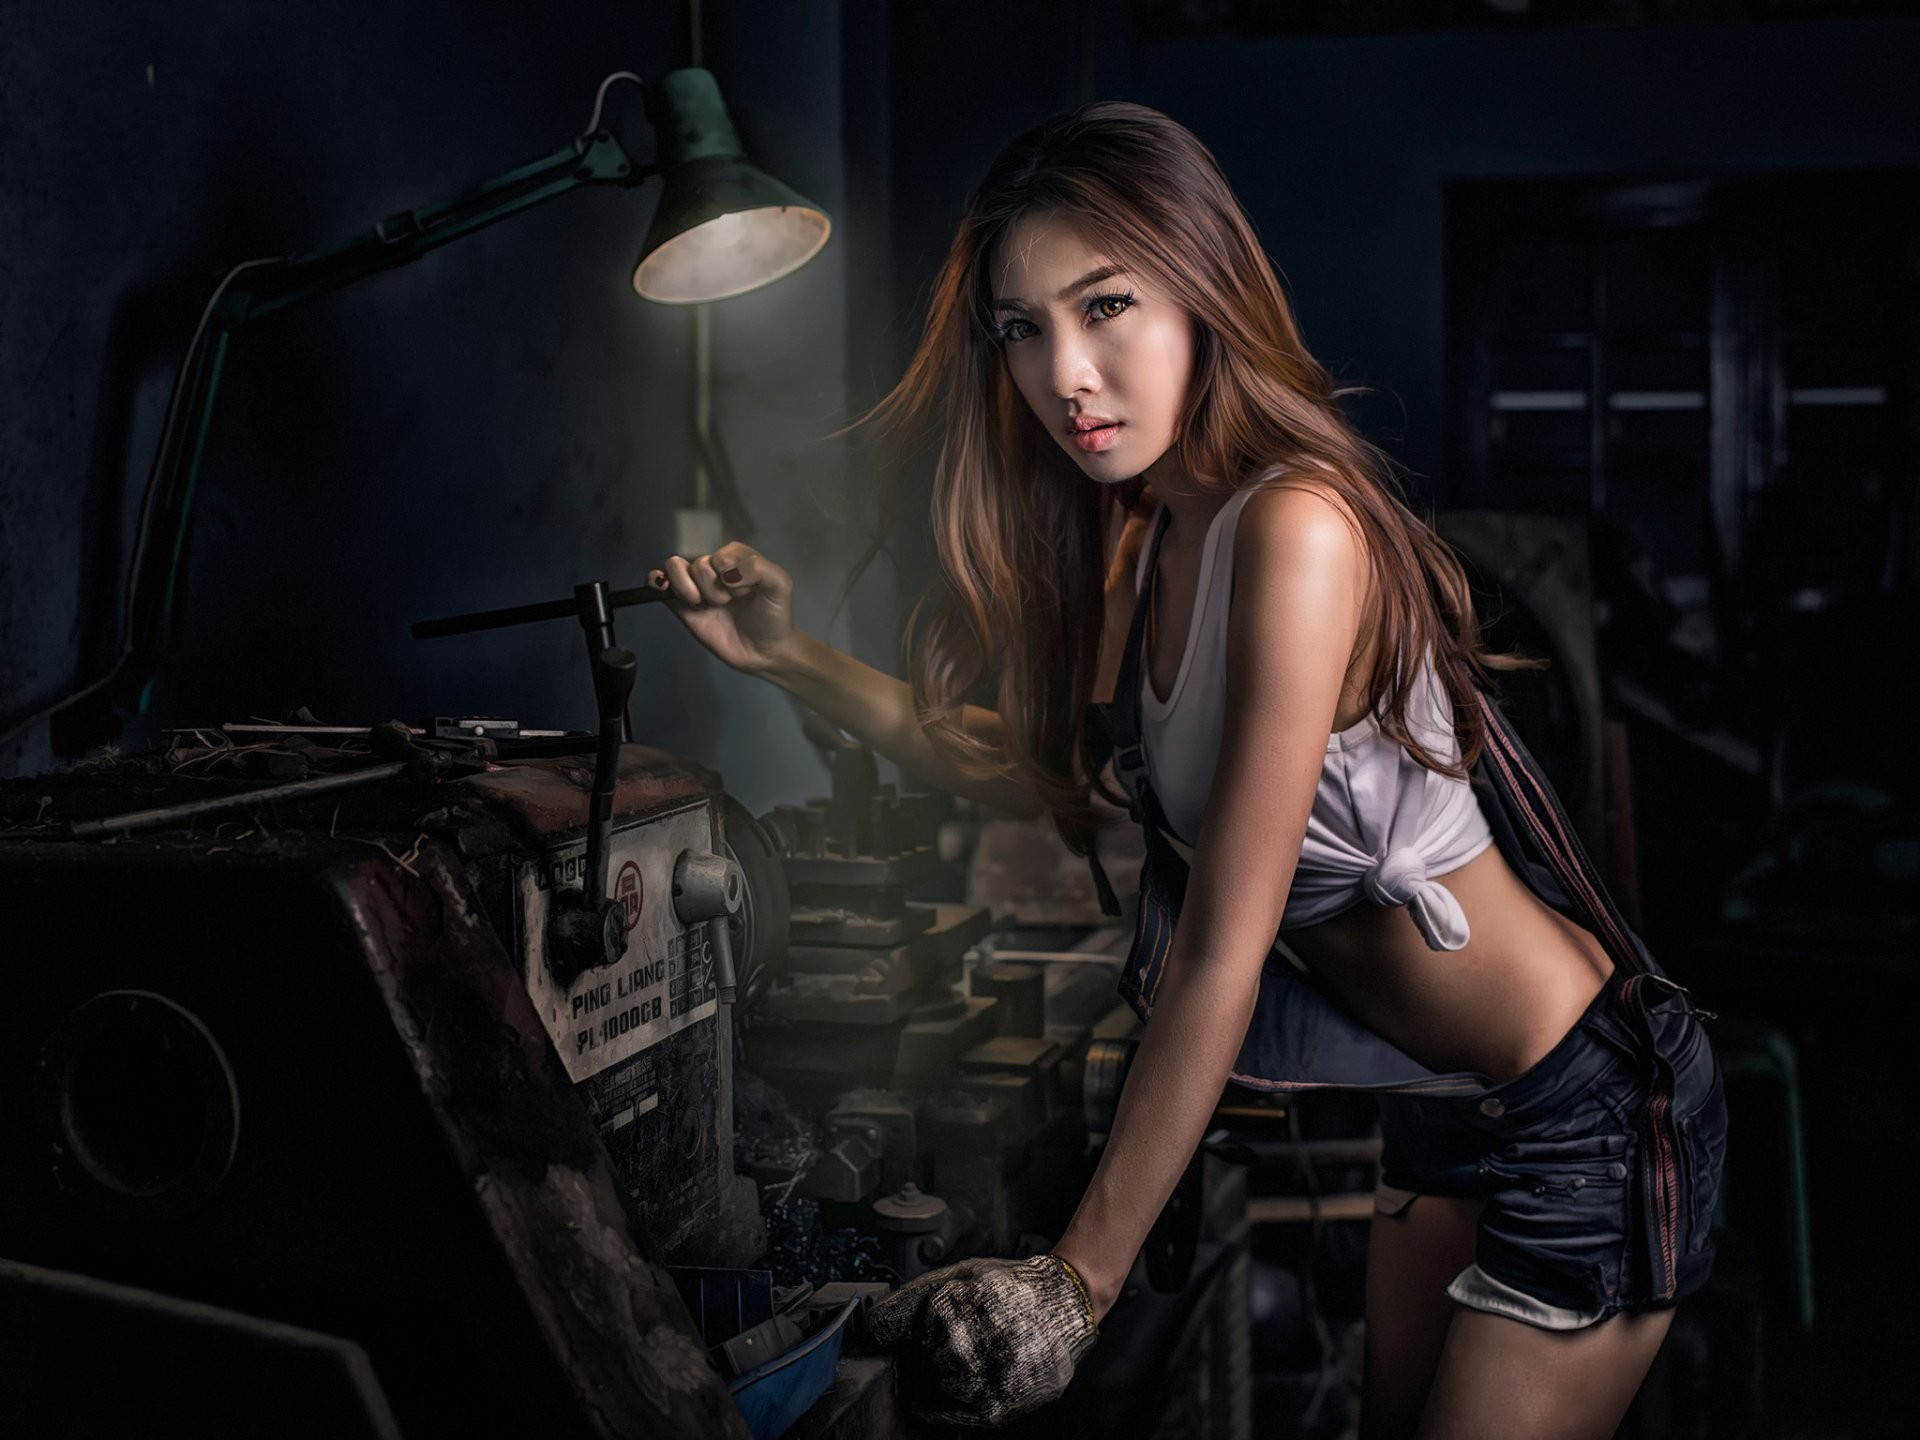 Бесплатное фото Девушка механик азиатской внешности